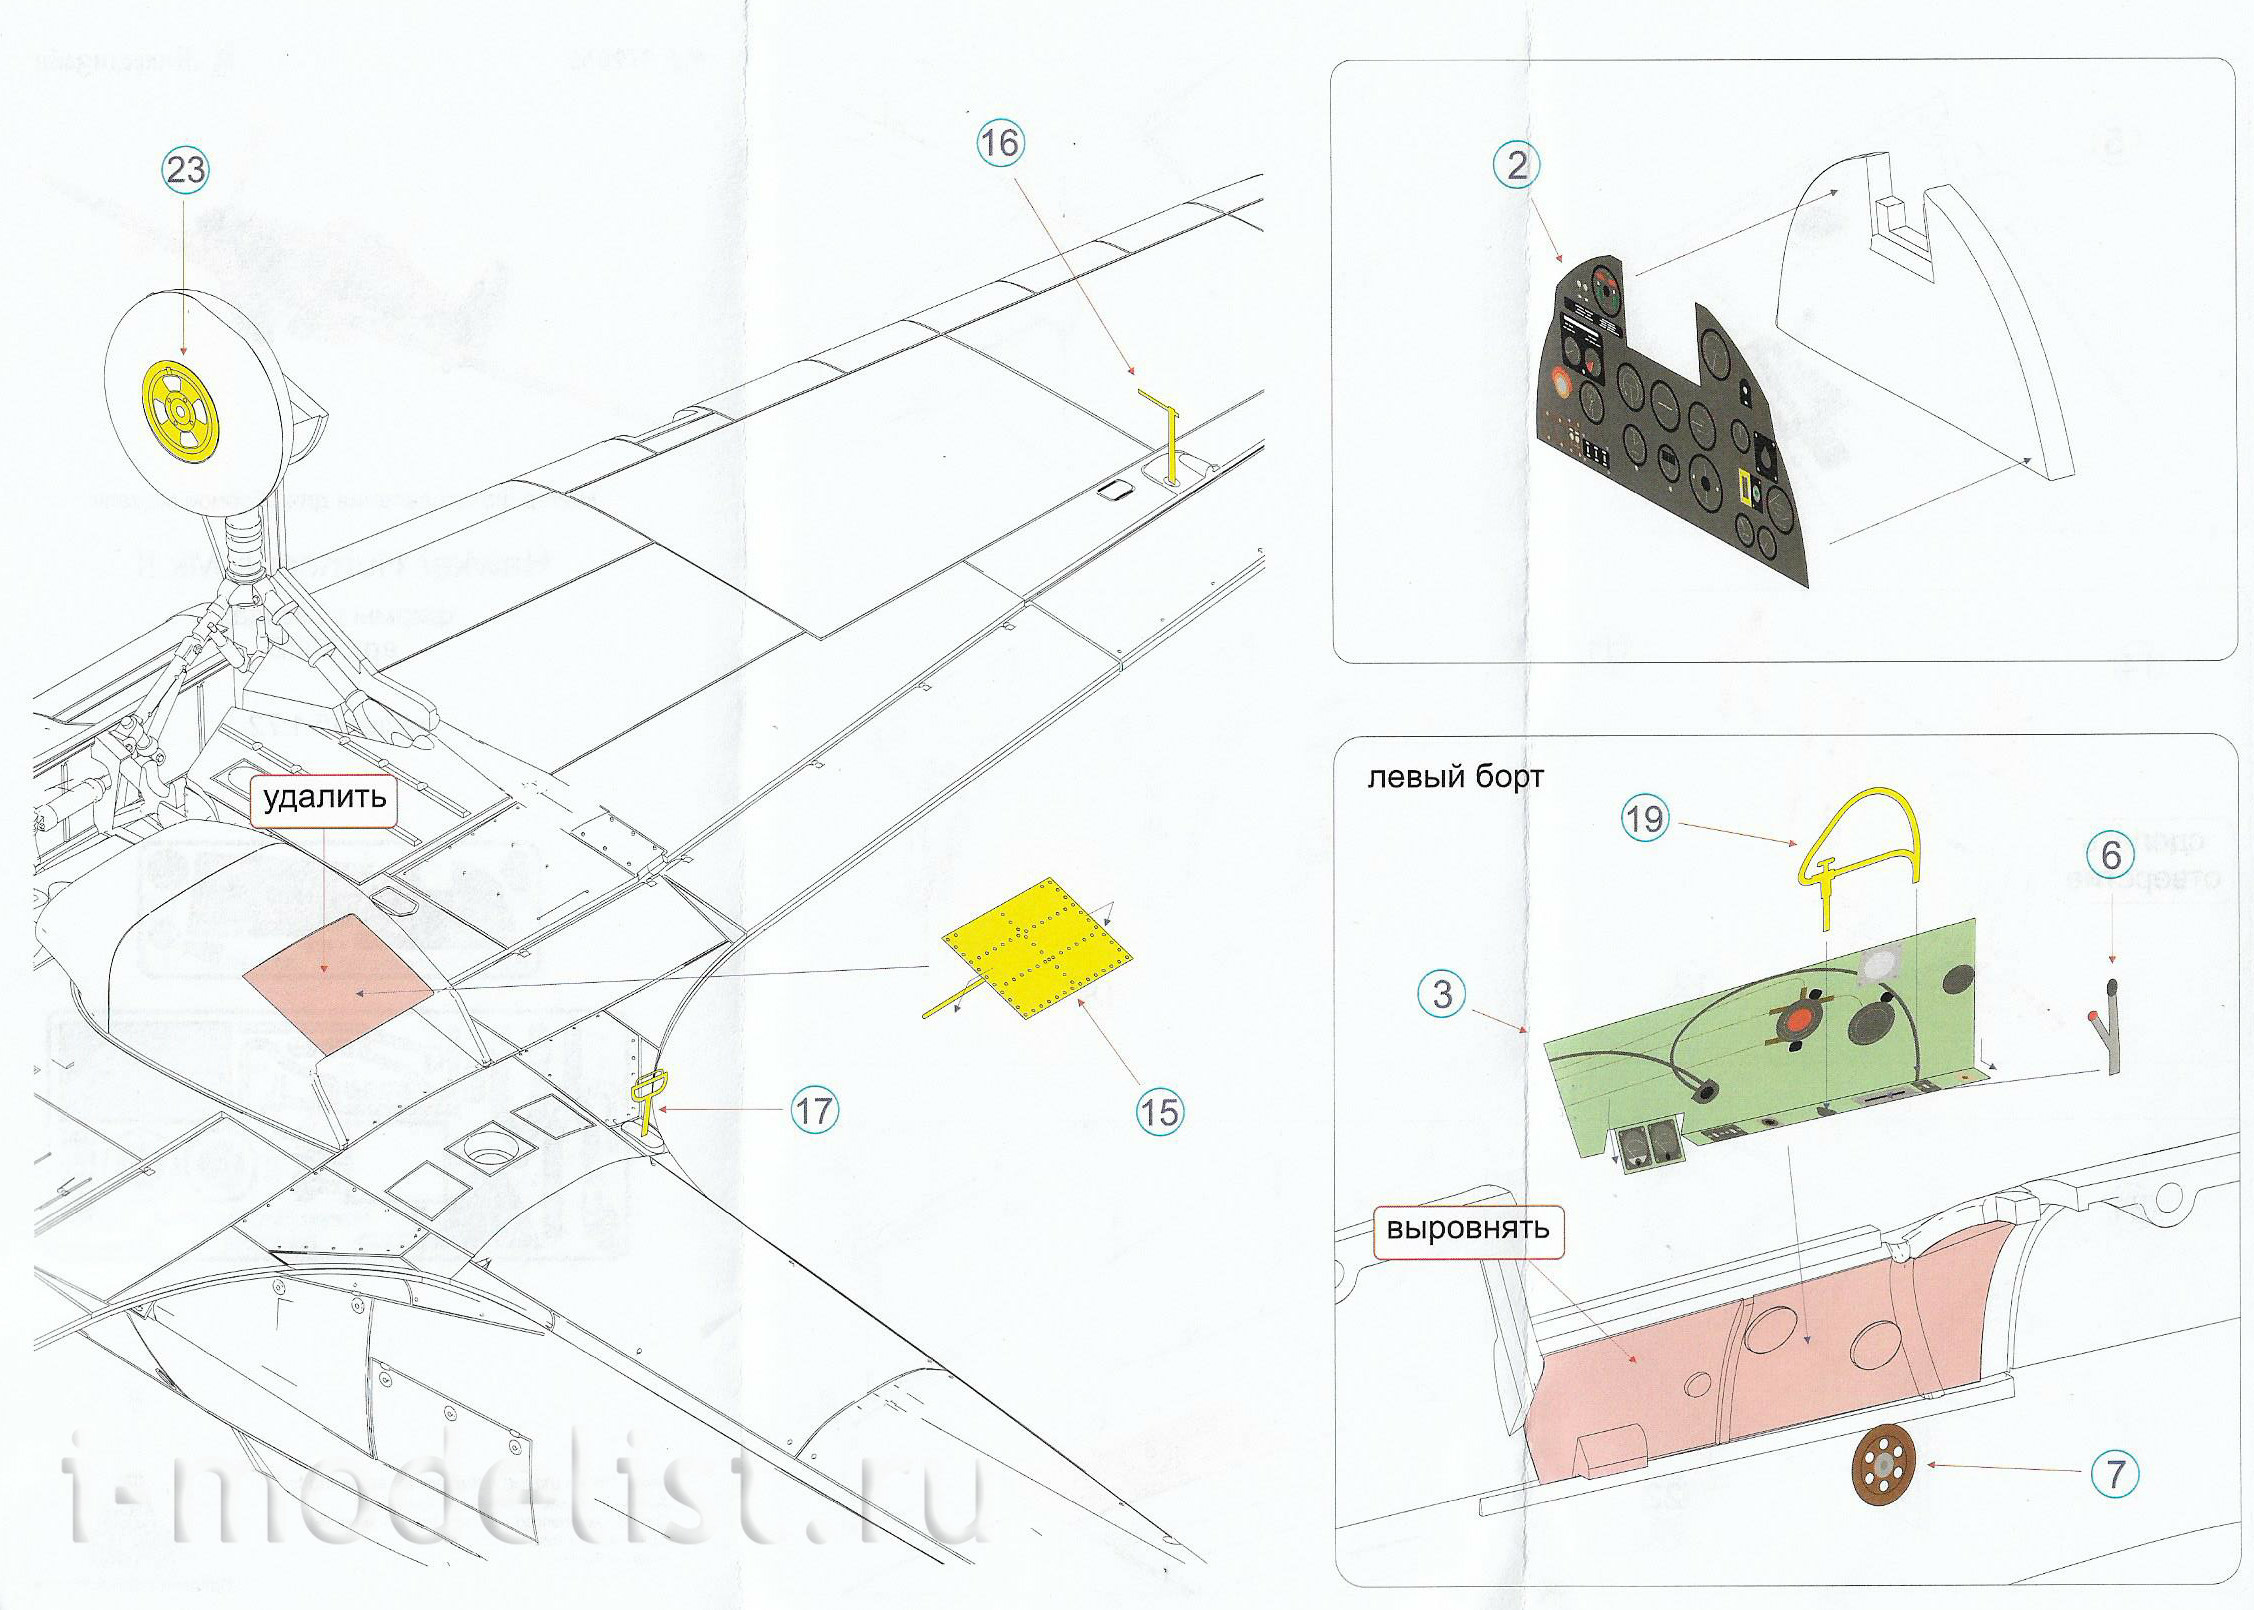 072039 Микродизайн 1/72 Набор цветного фототравления кабины Hawker Hurricane Mk.II (Звезда)